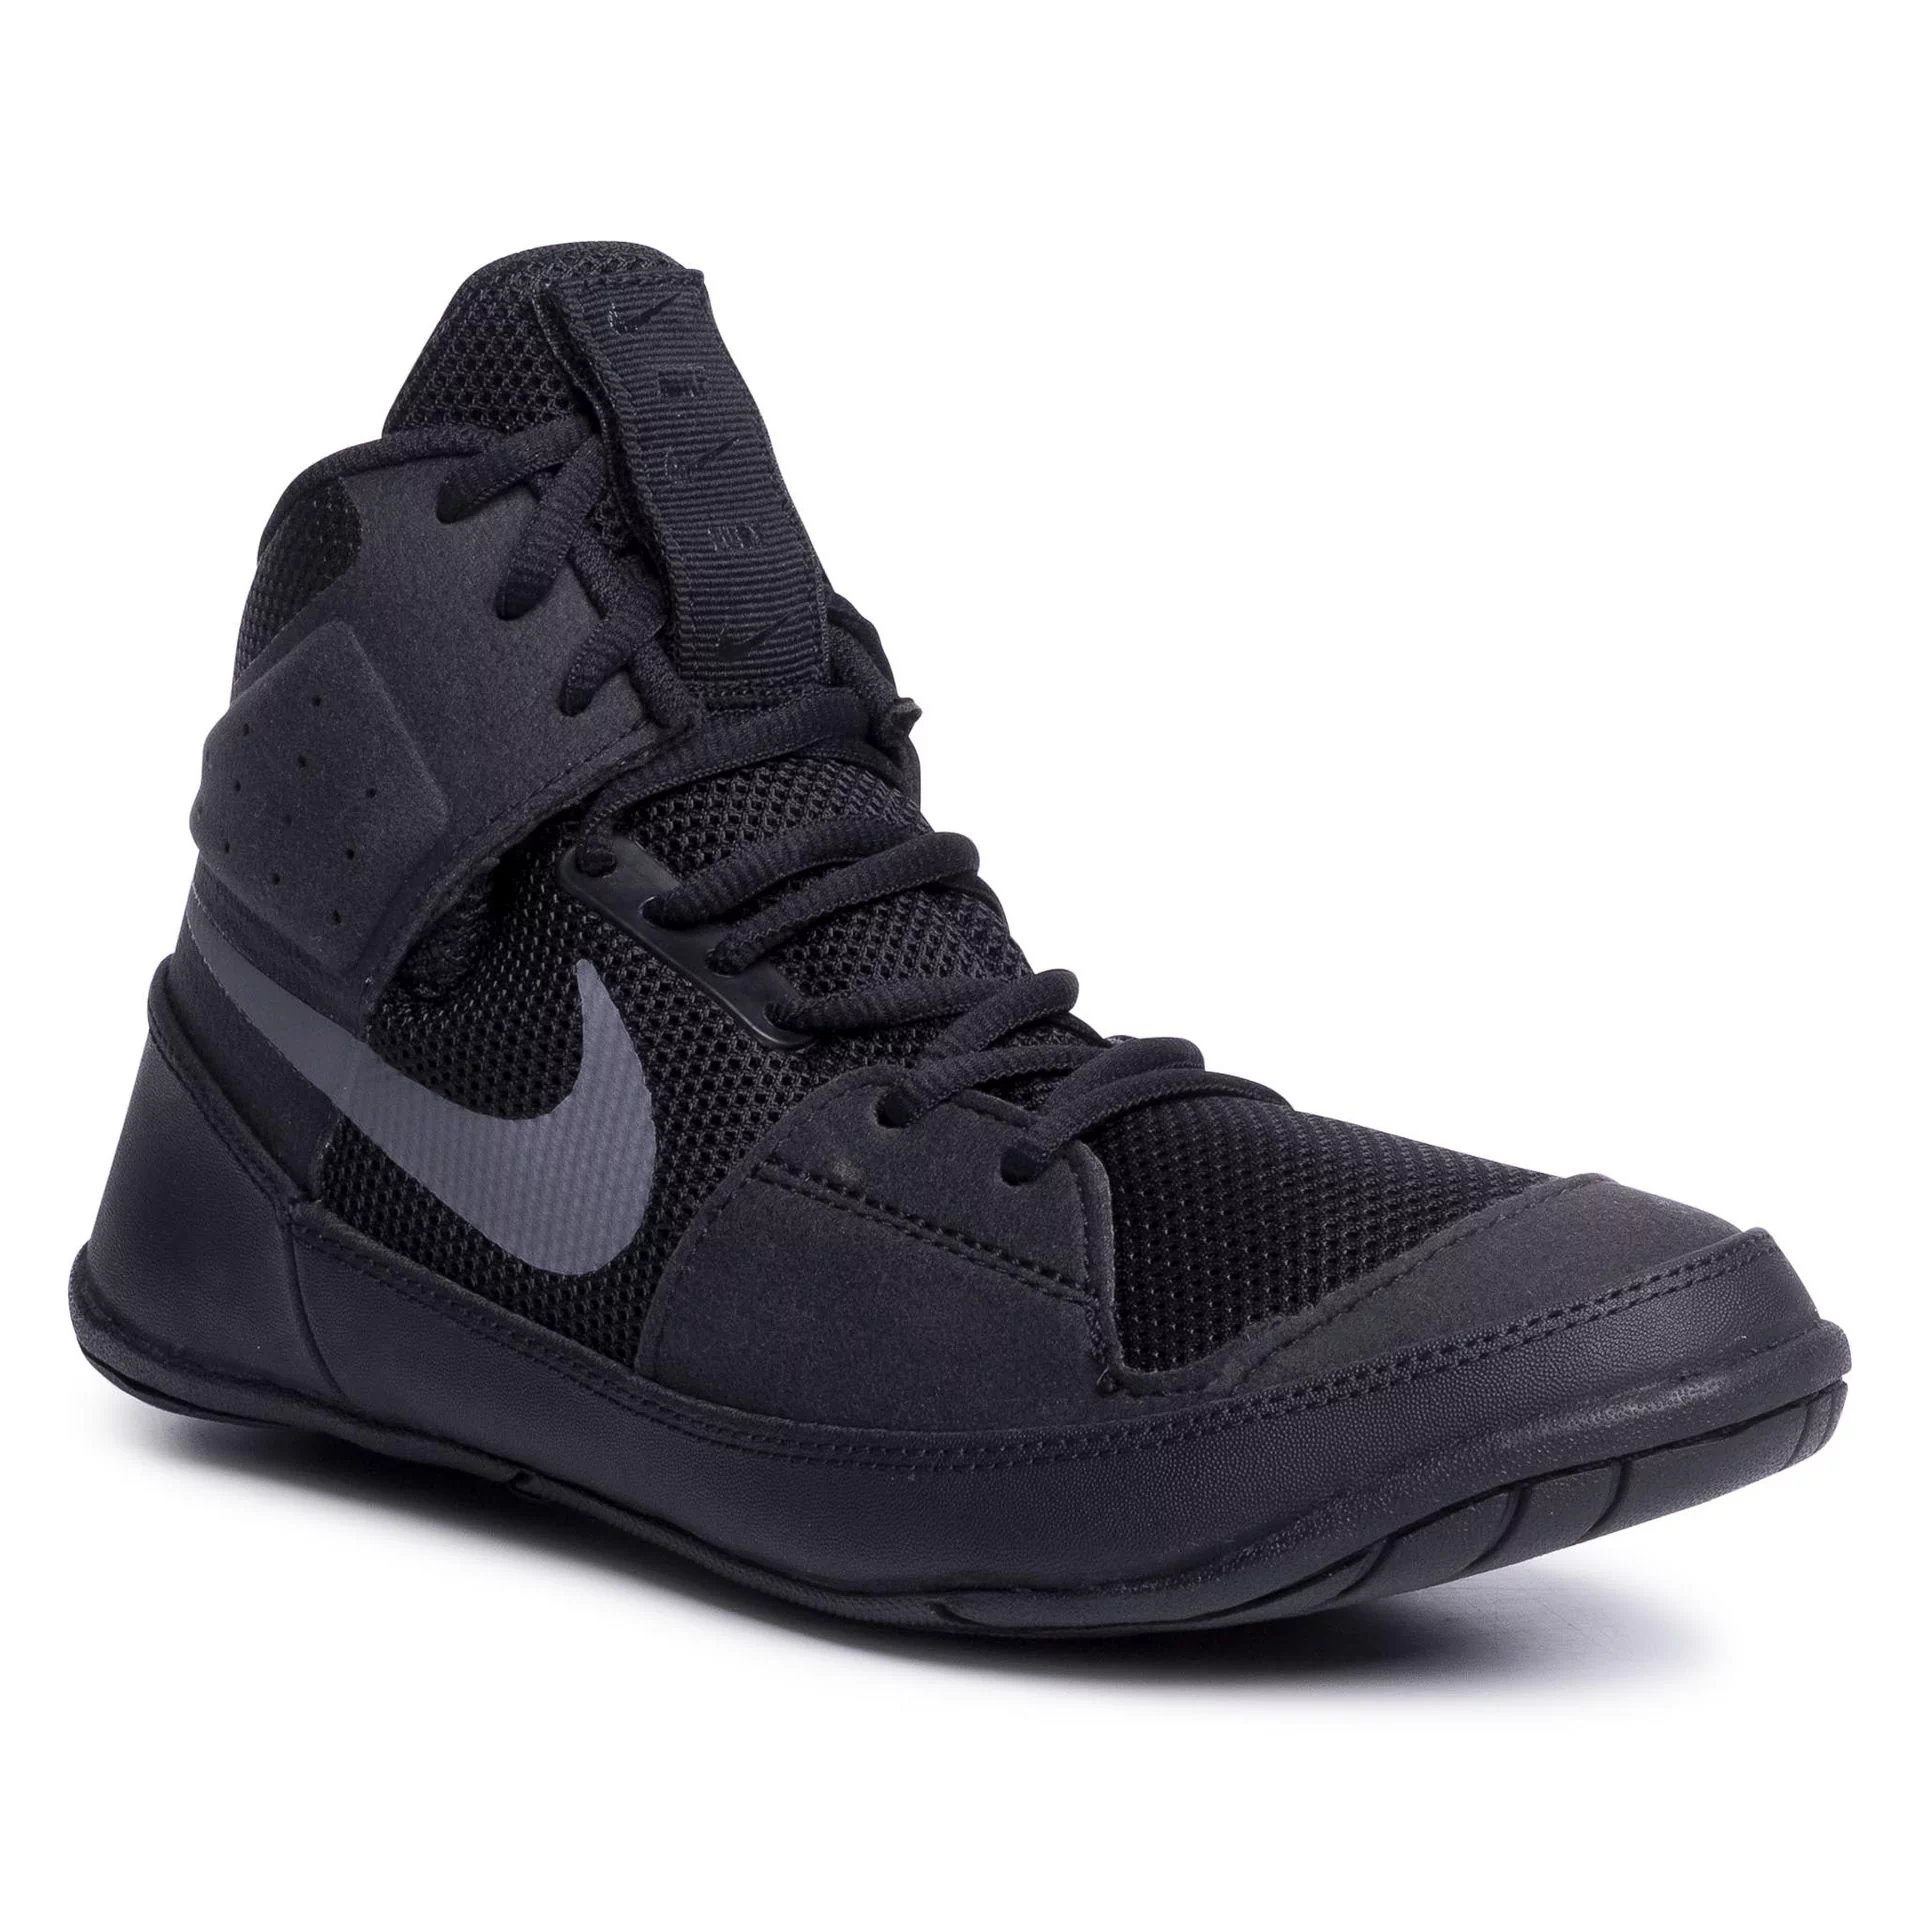 Nike Buty Fury A02416 010 Black/Dark Grey